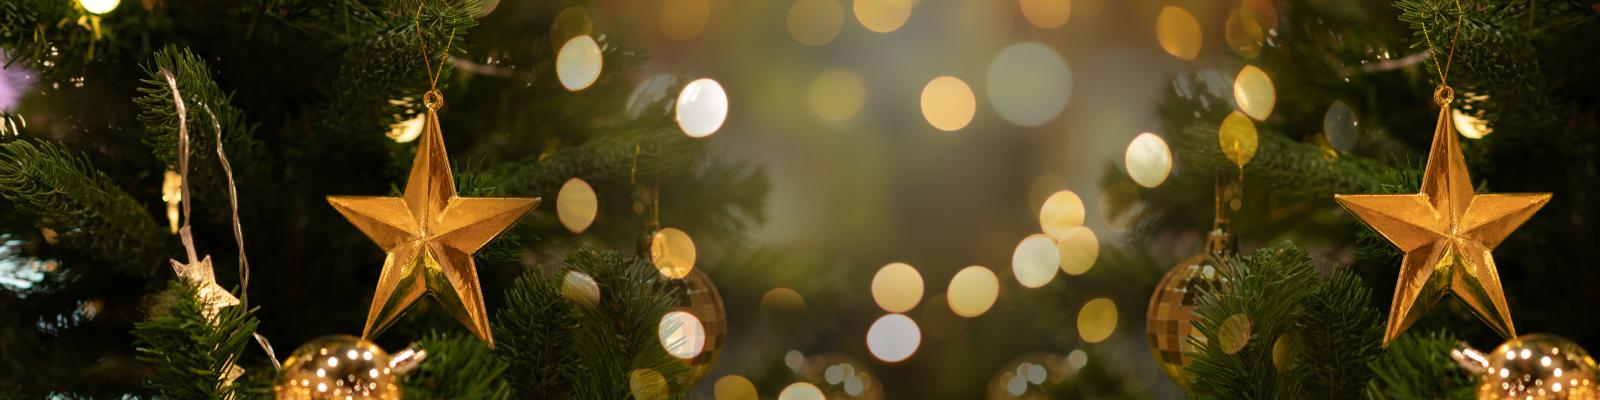 Nahaufnahme von einem grünen Tannenbaum geschmückt mit goldenen Sternen, goldenen Kugeln und Lichterketten, die sternförmige oder runde Leuchten haben, im Hintergrund mittig verschwommene Lichter